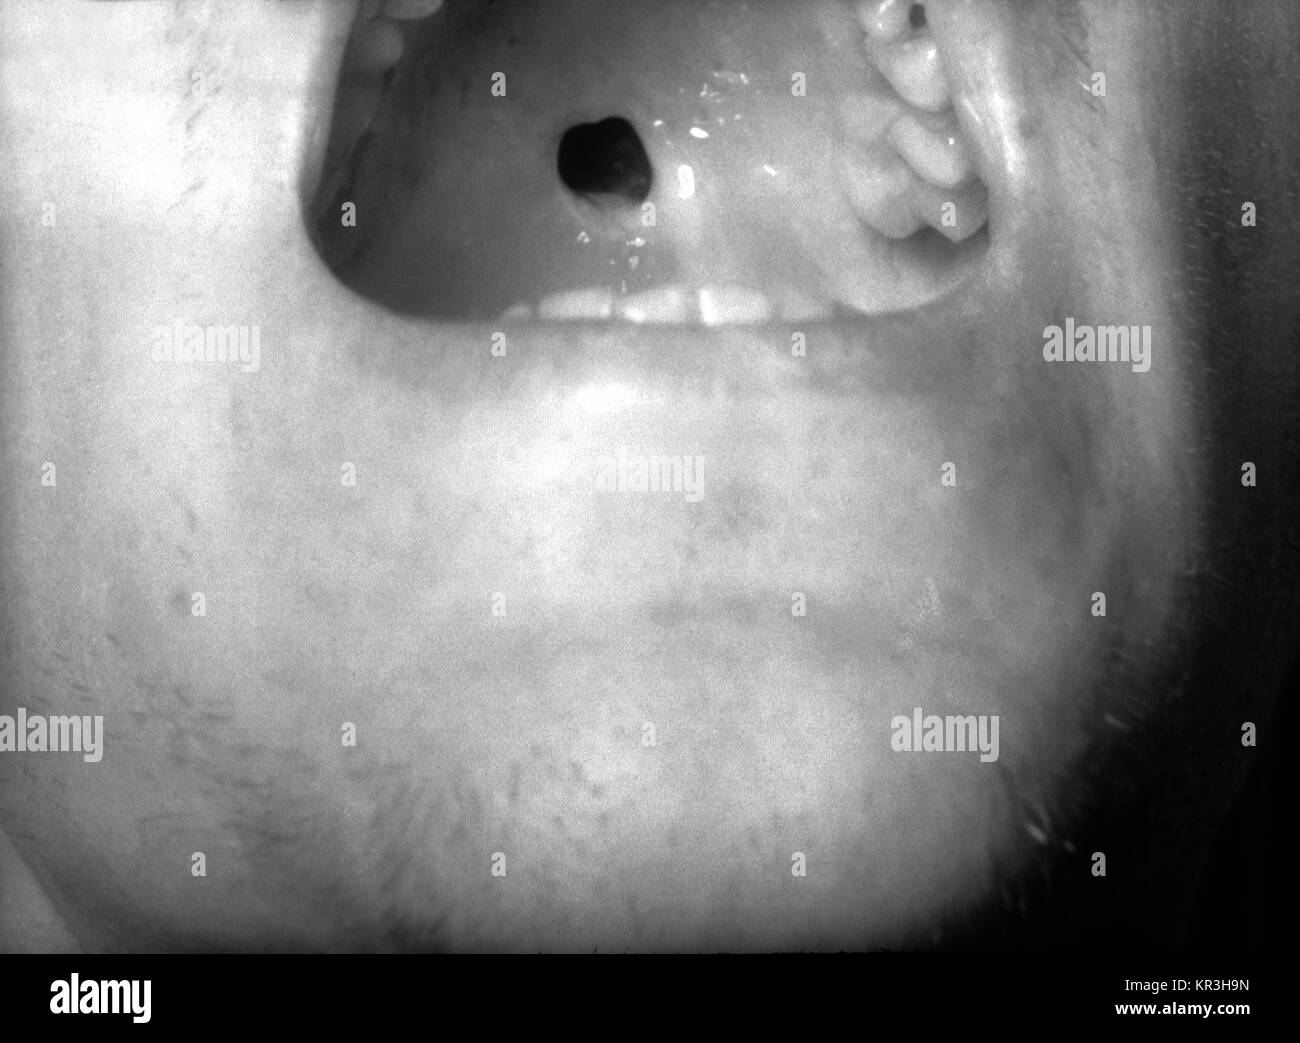 Esta fotografía muestra un paladar duro perforado en un paciente con sífilis congénita. Este paciente con sífilis congénita ha desarrollado una perforación del paladar duro debido a la destrucción gomosa, 1971. Estos tumores destructivos también pueden atacar la piel, los huesos largos, ojos, membranas mucosas, garganta, hígado o estómago. Imagen cortesía de CDC/Susan Lindsley. Foto de stock